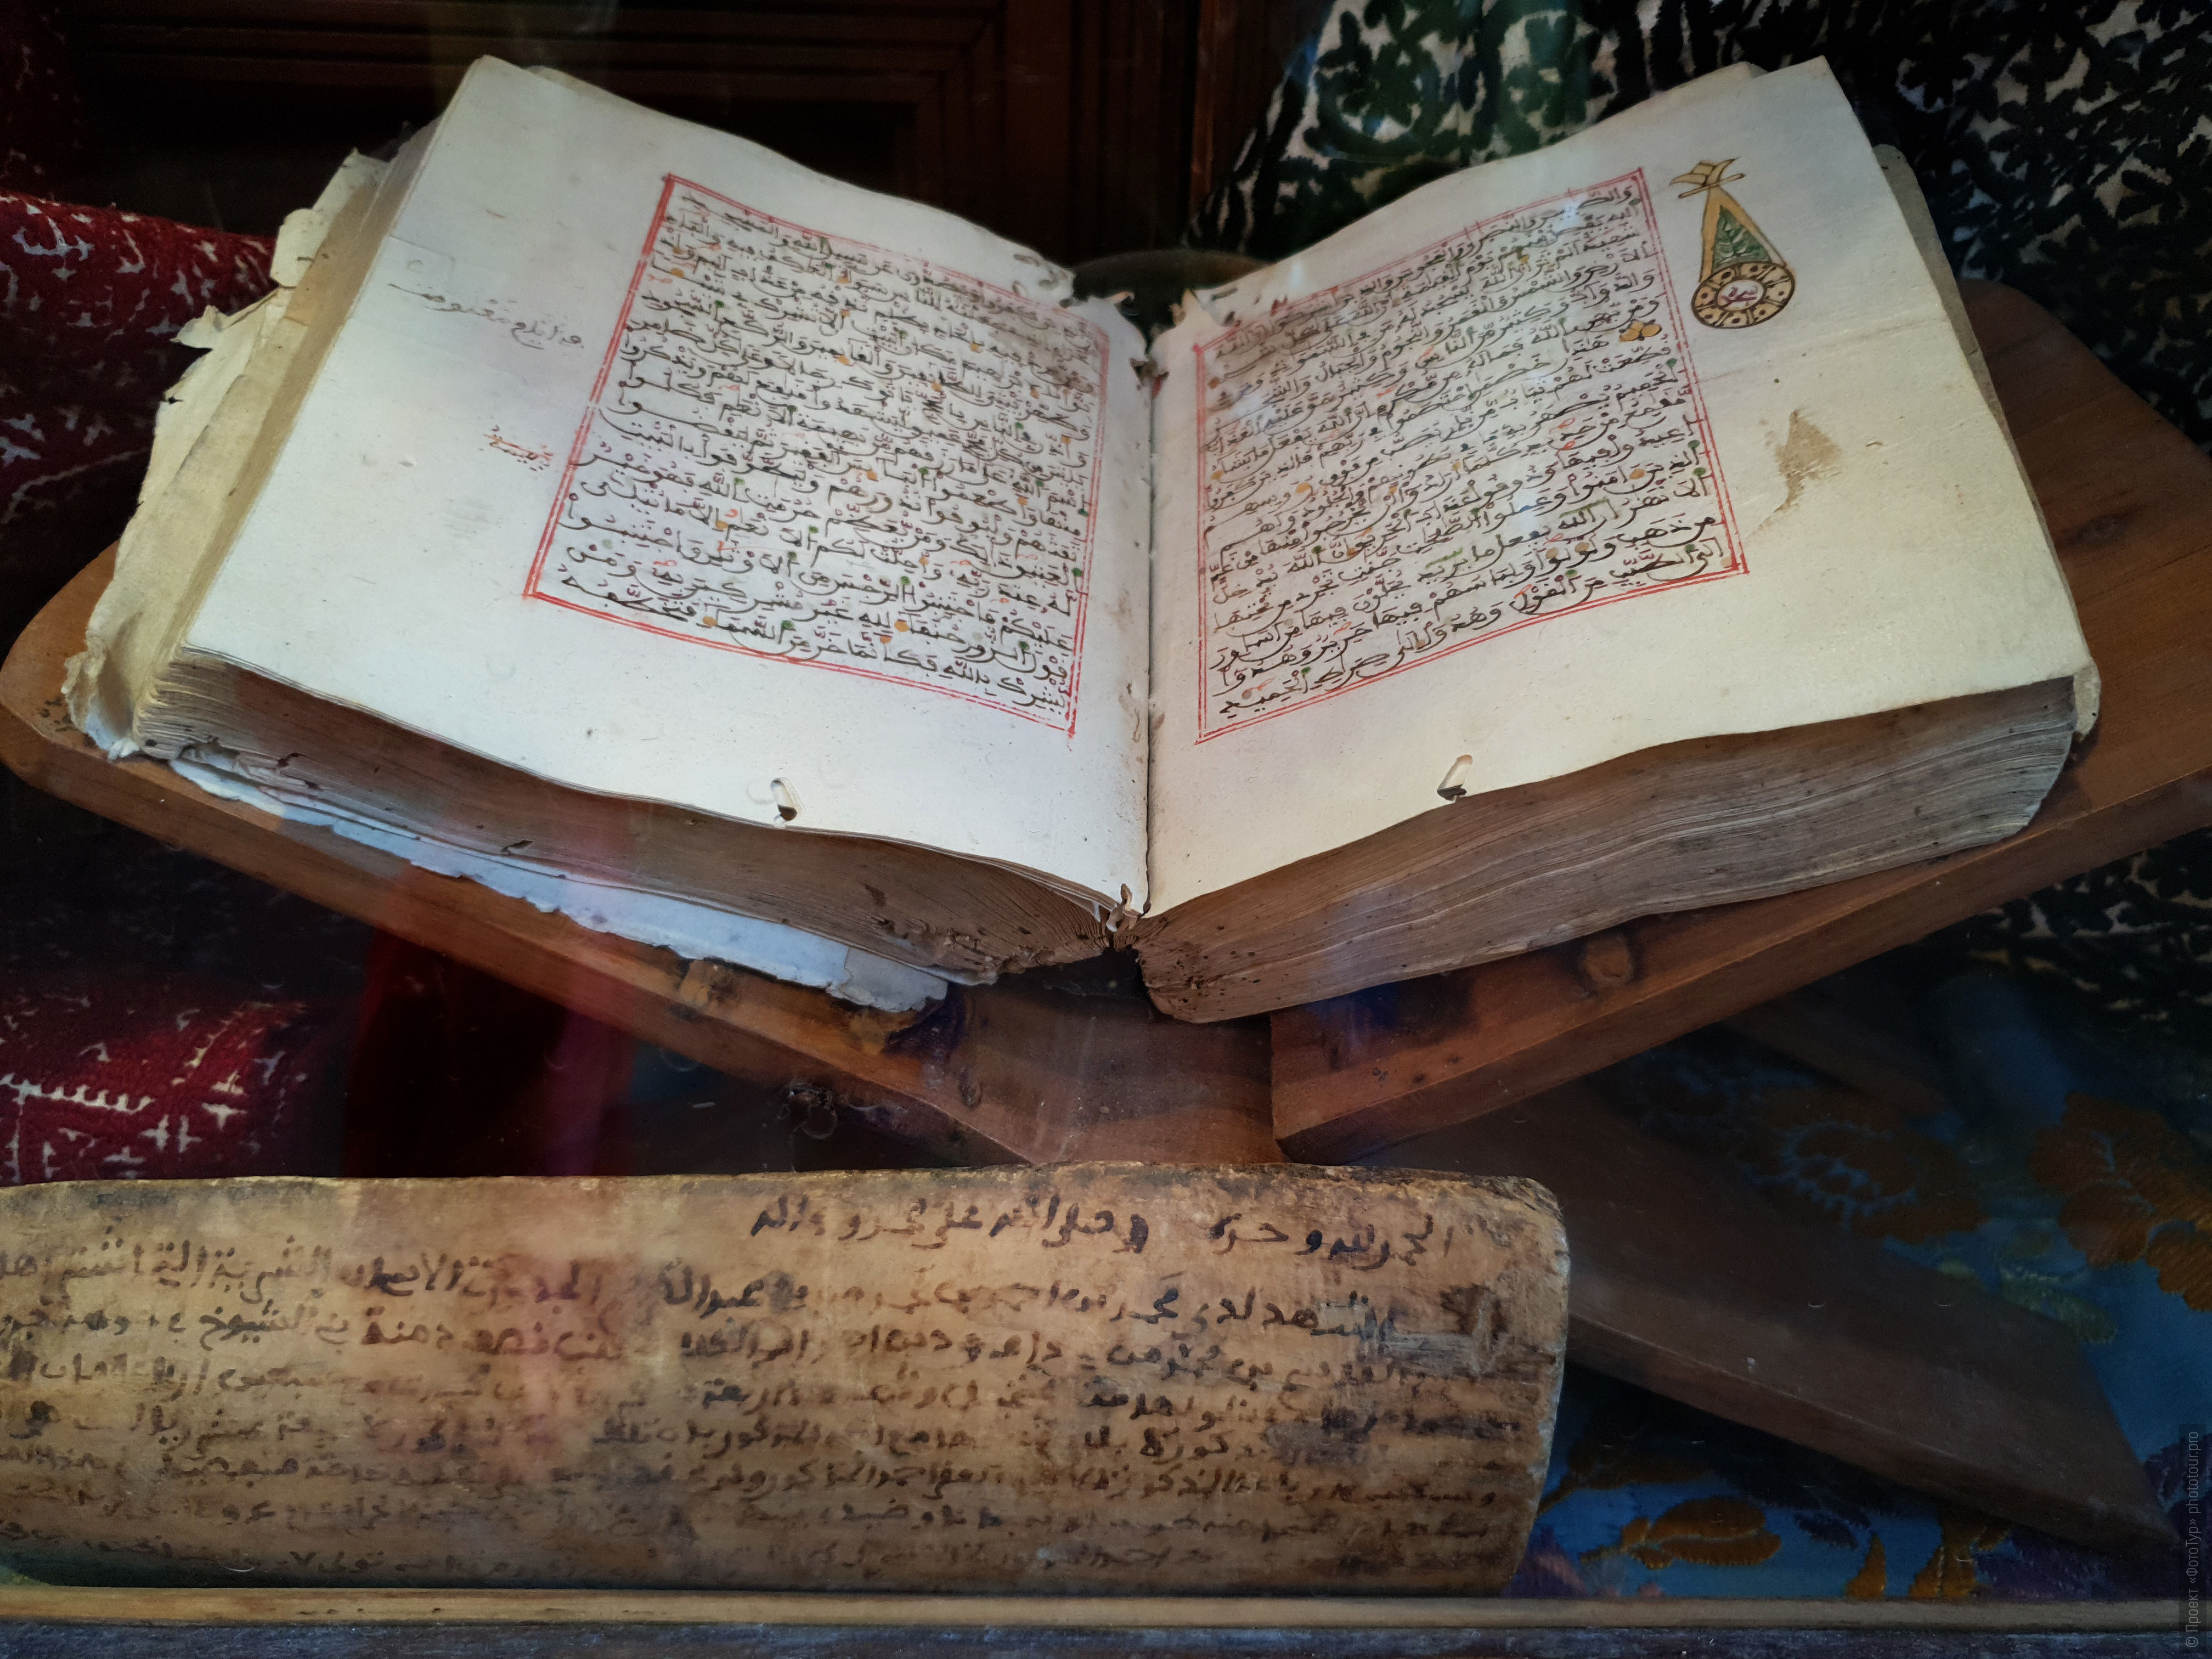 Древний рукописный Коран. Фототур в Марокко: медины и порты Марокко, 7 ноября - 18 ноября 2021 года.